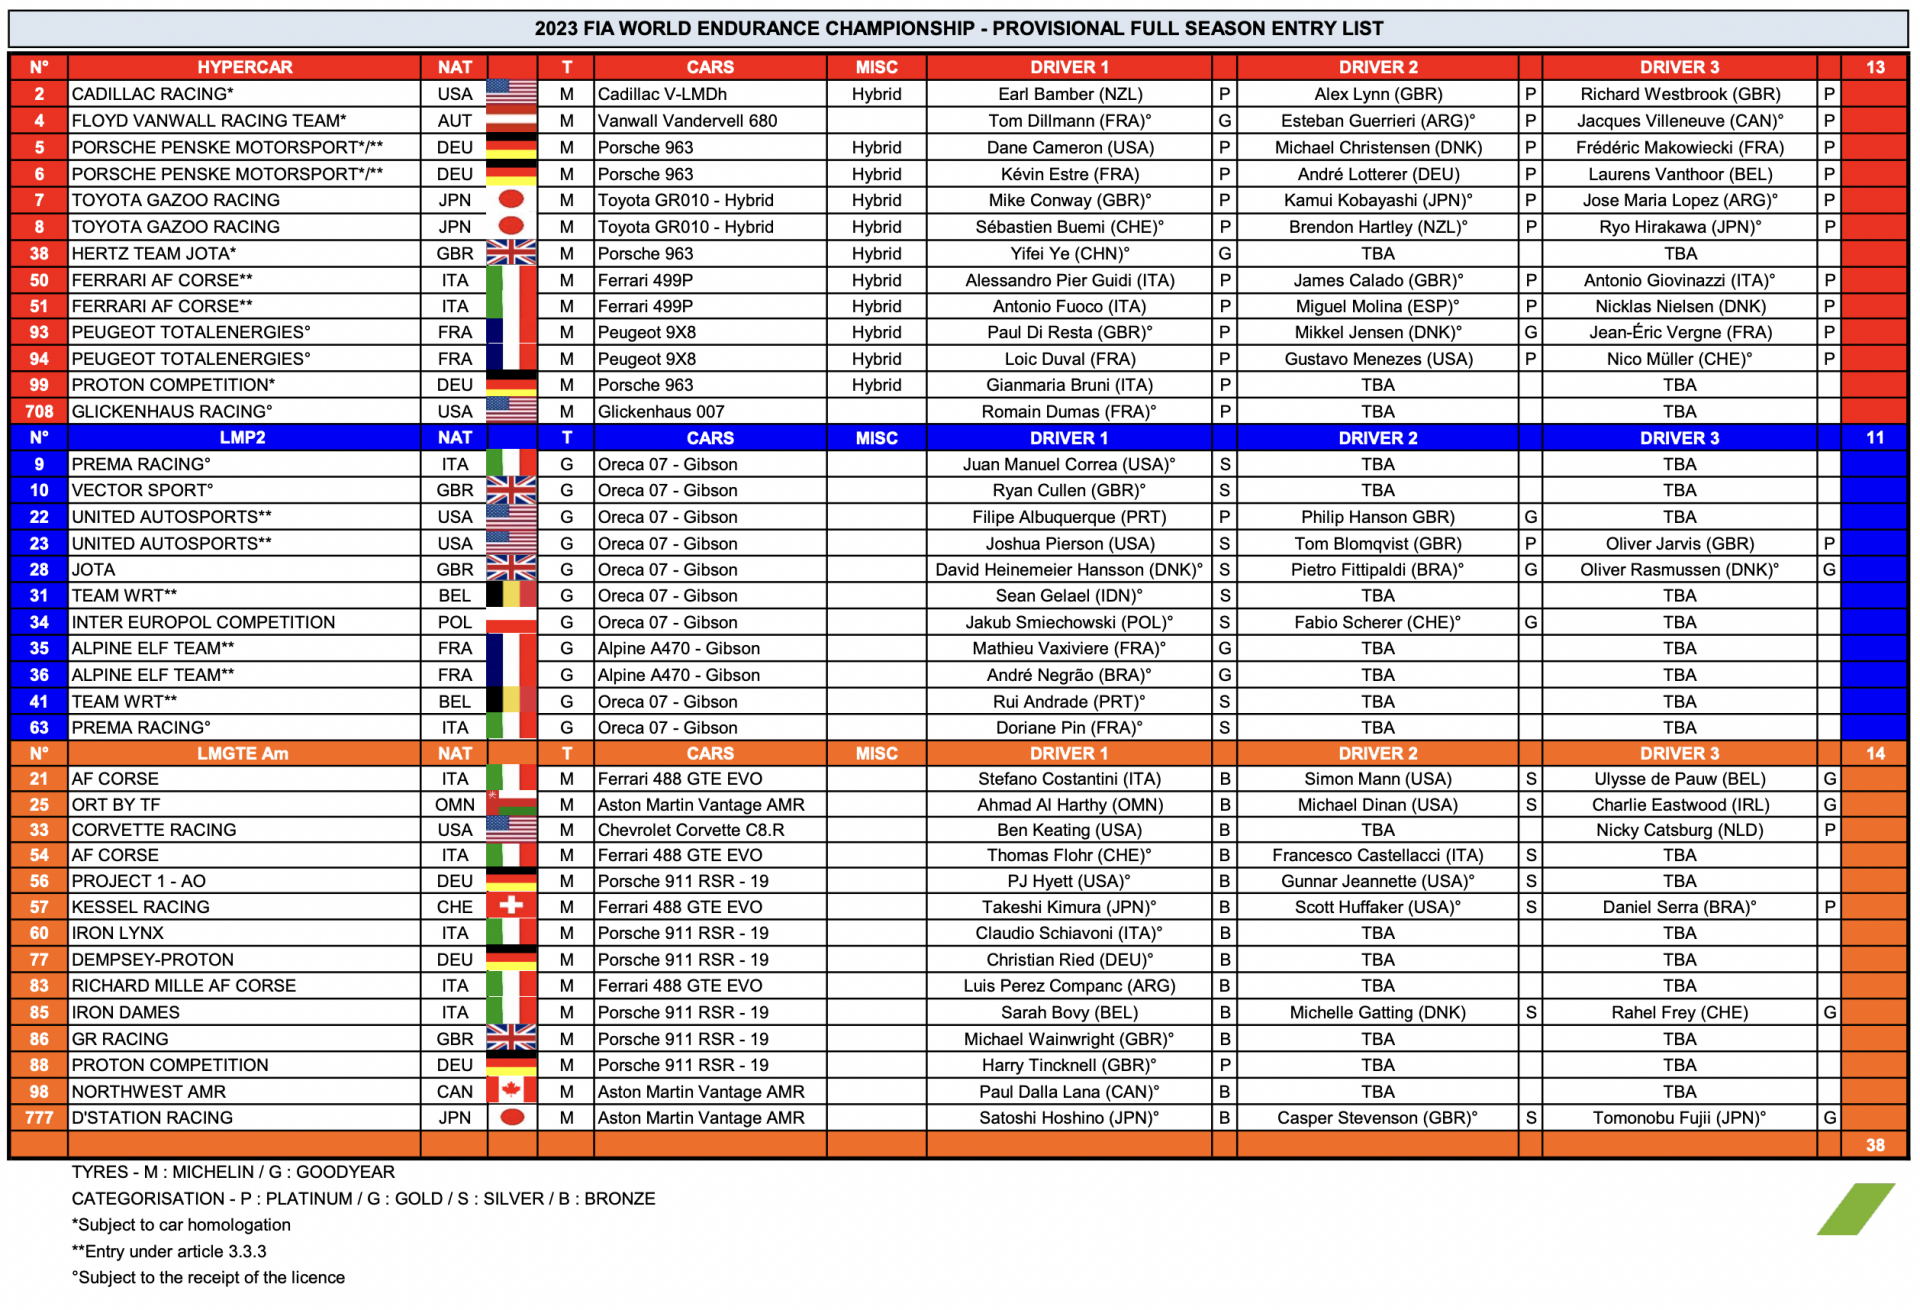 The World Endurance Championship 2023, OT